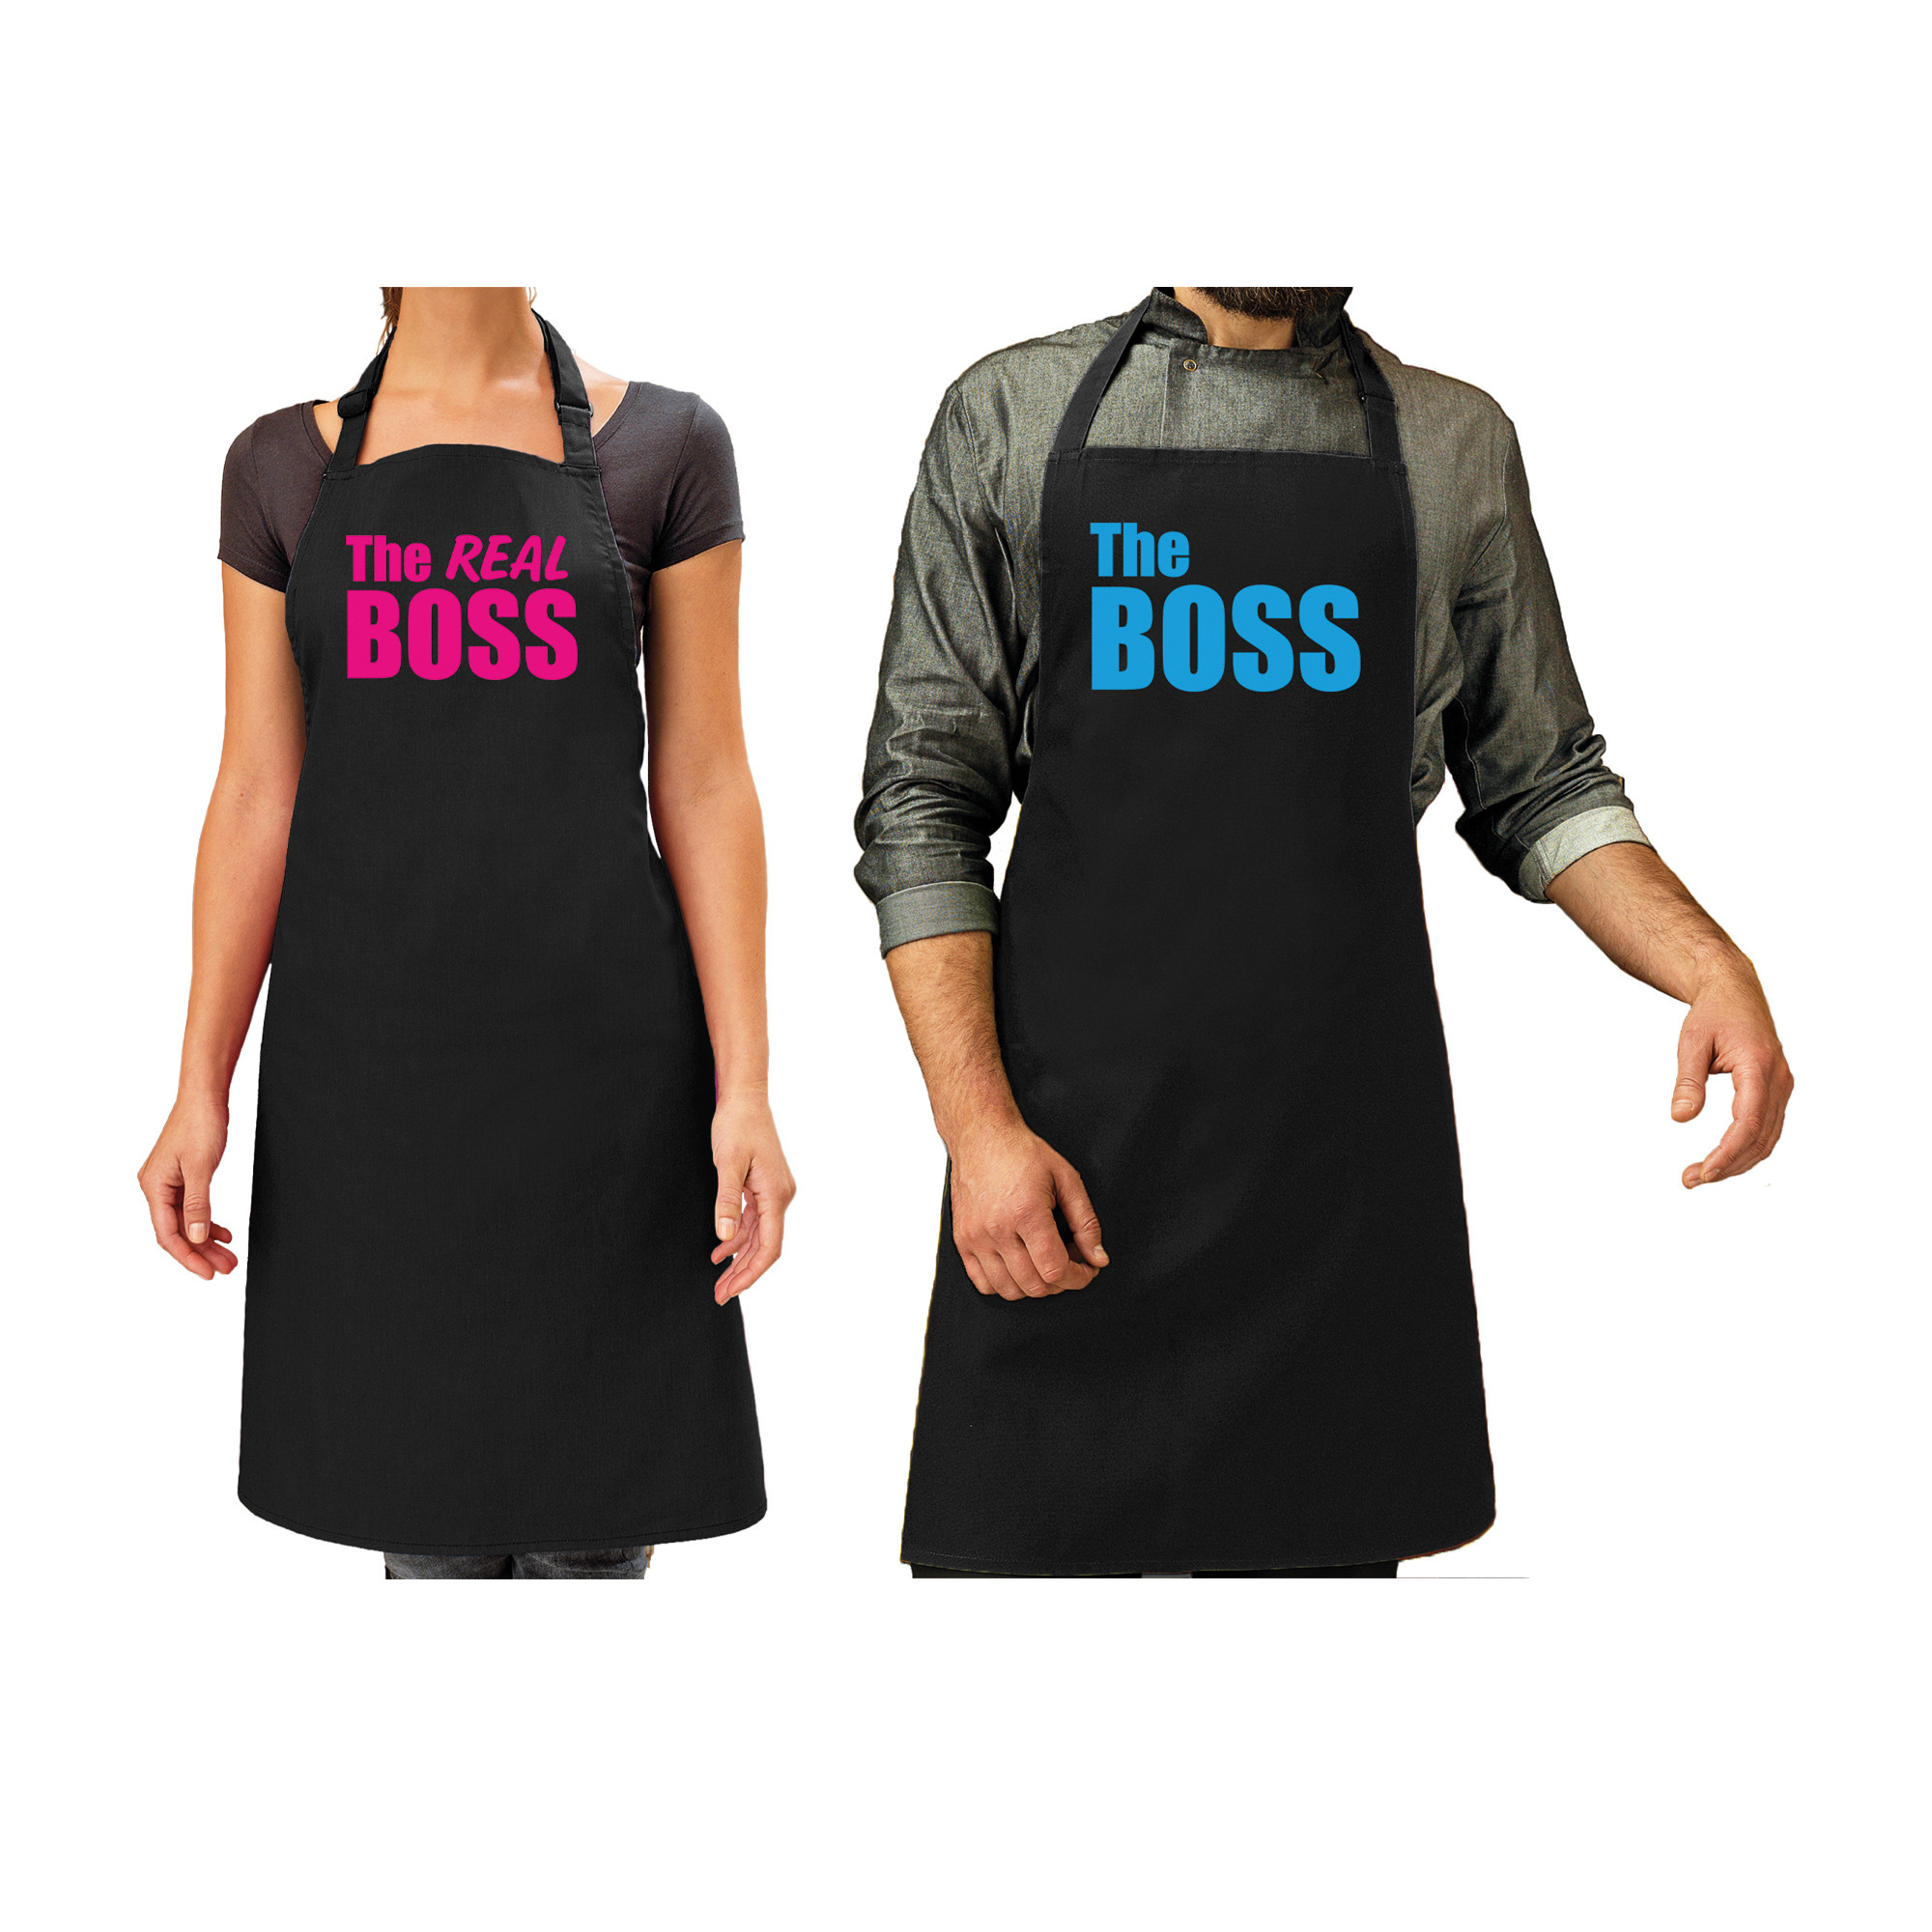 The boss en The real boss cadeau schorten set zwart en blauw/roze volwassenen - cadeau bruiloft